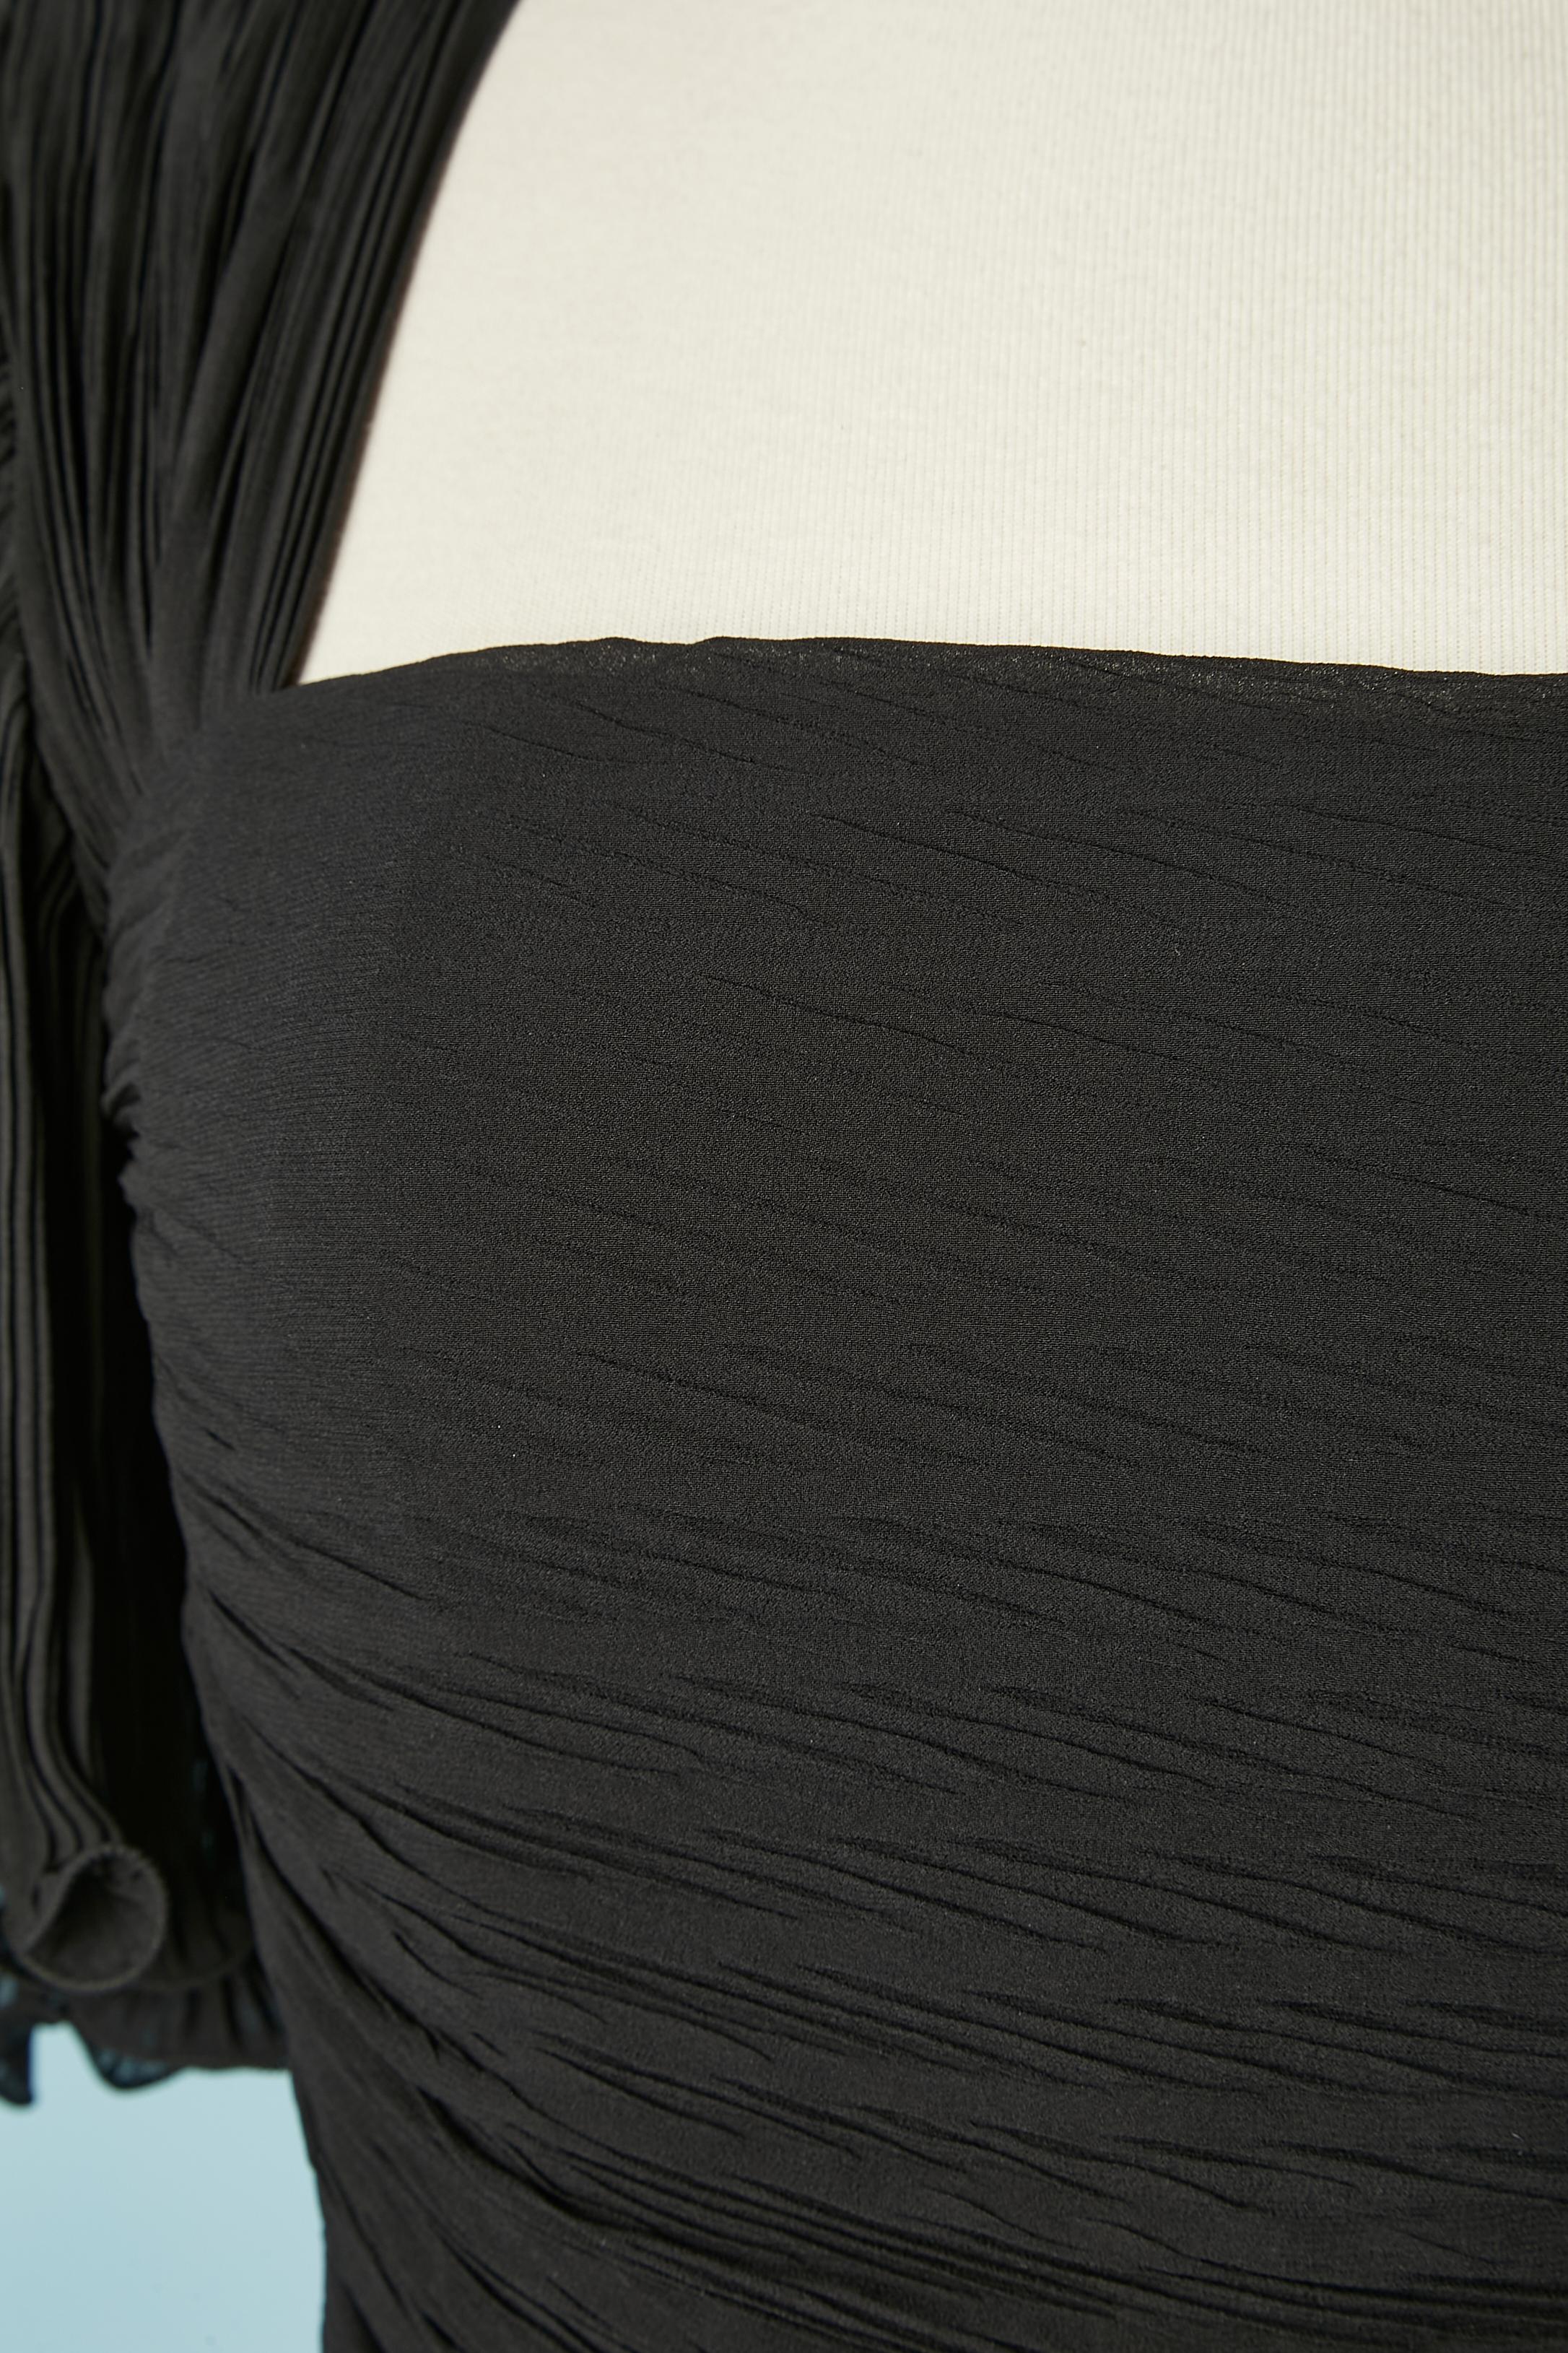 Robe de cocktail plissée en soie noire avec volants. Doublure en organza à l'intérieur des manches et doublure en rayonne à l'intérieur de la robe. Epaulières
TAILLE S